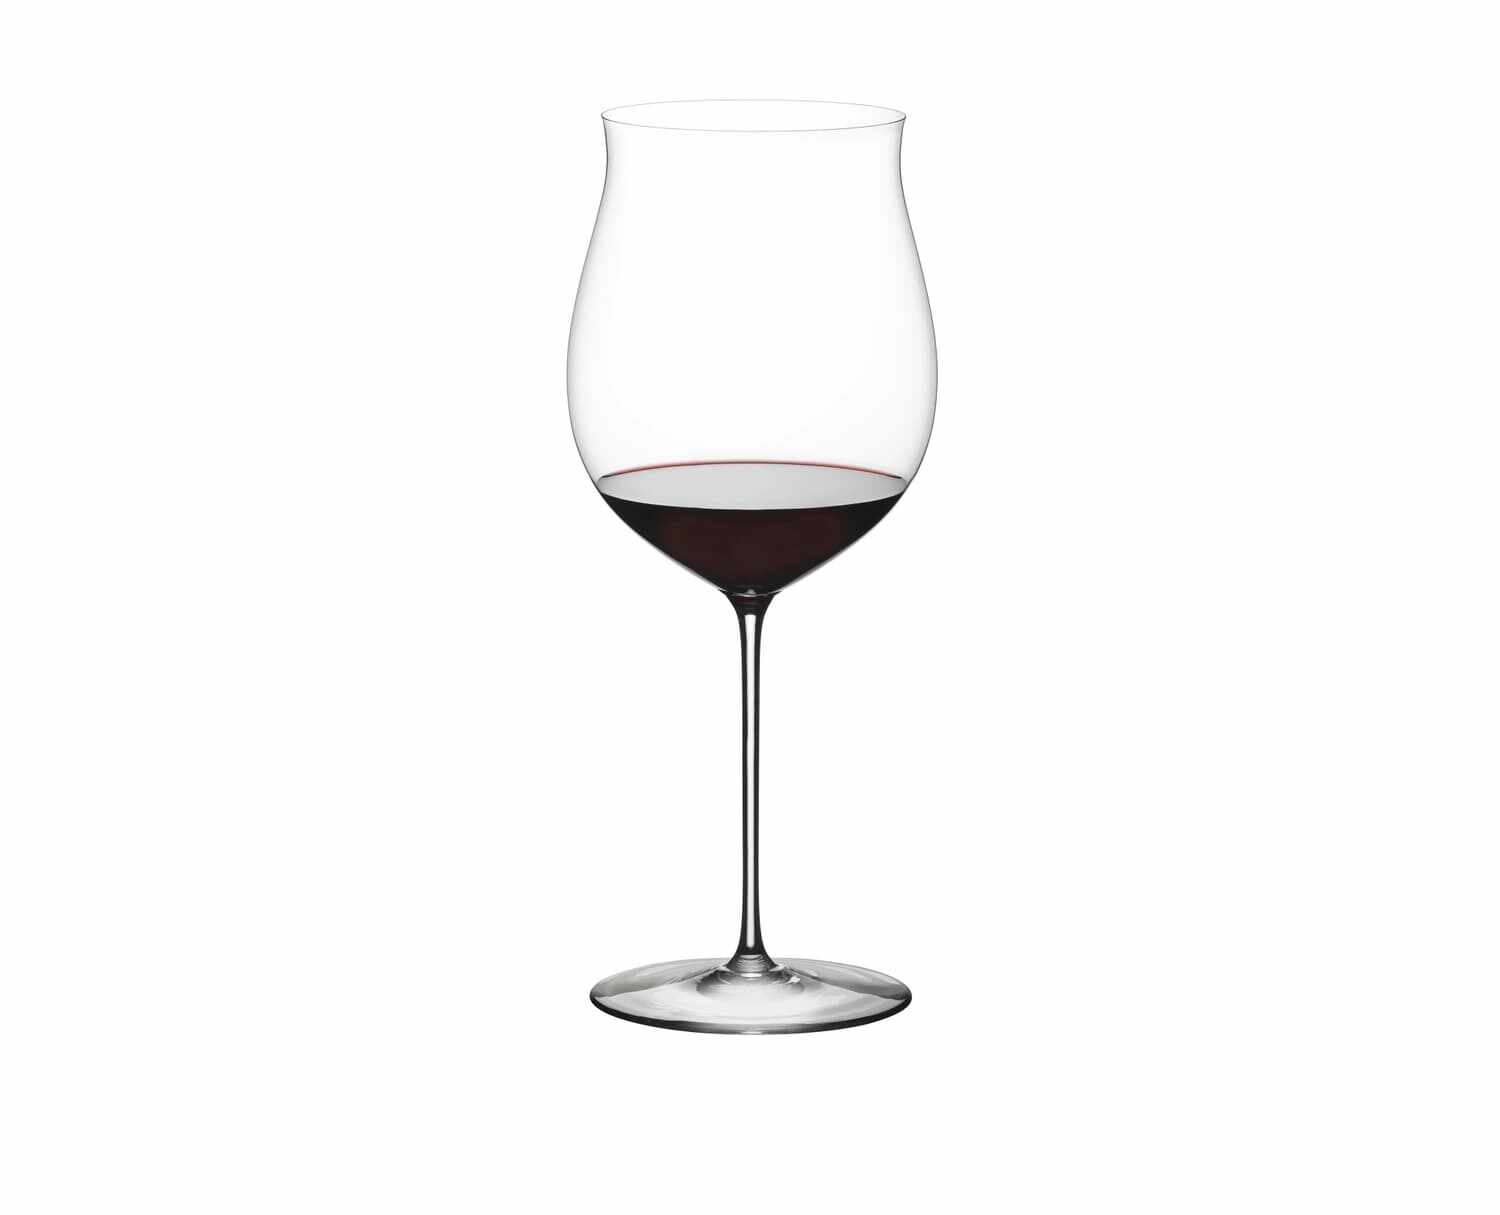 Pahar pentru vin, din cristal Superleggero Burgundy Grand Cru Clear, 1004 ml, Riedel